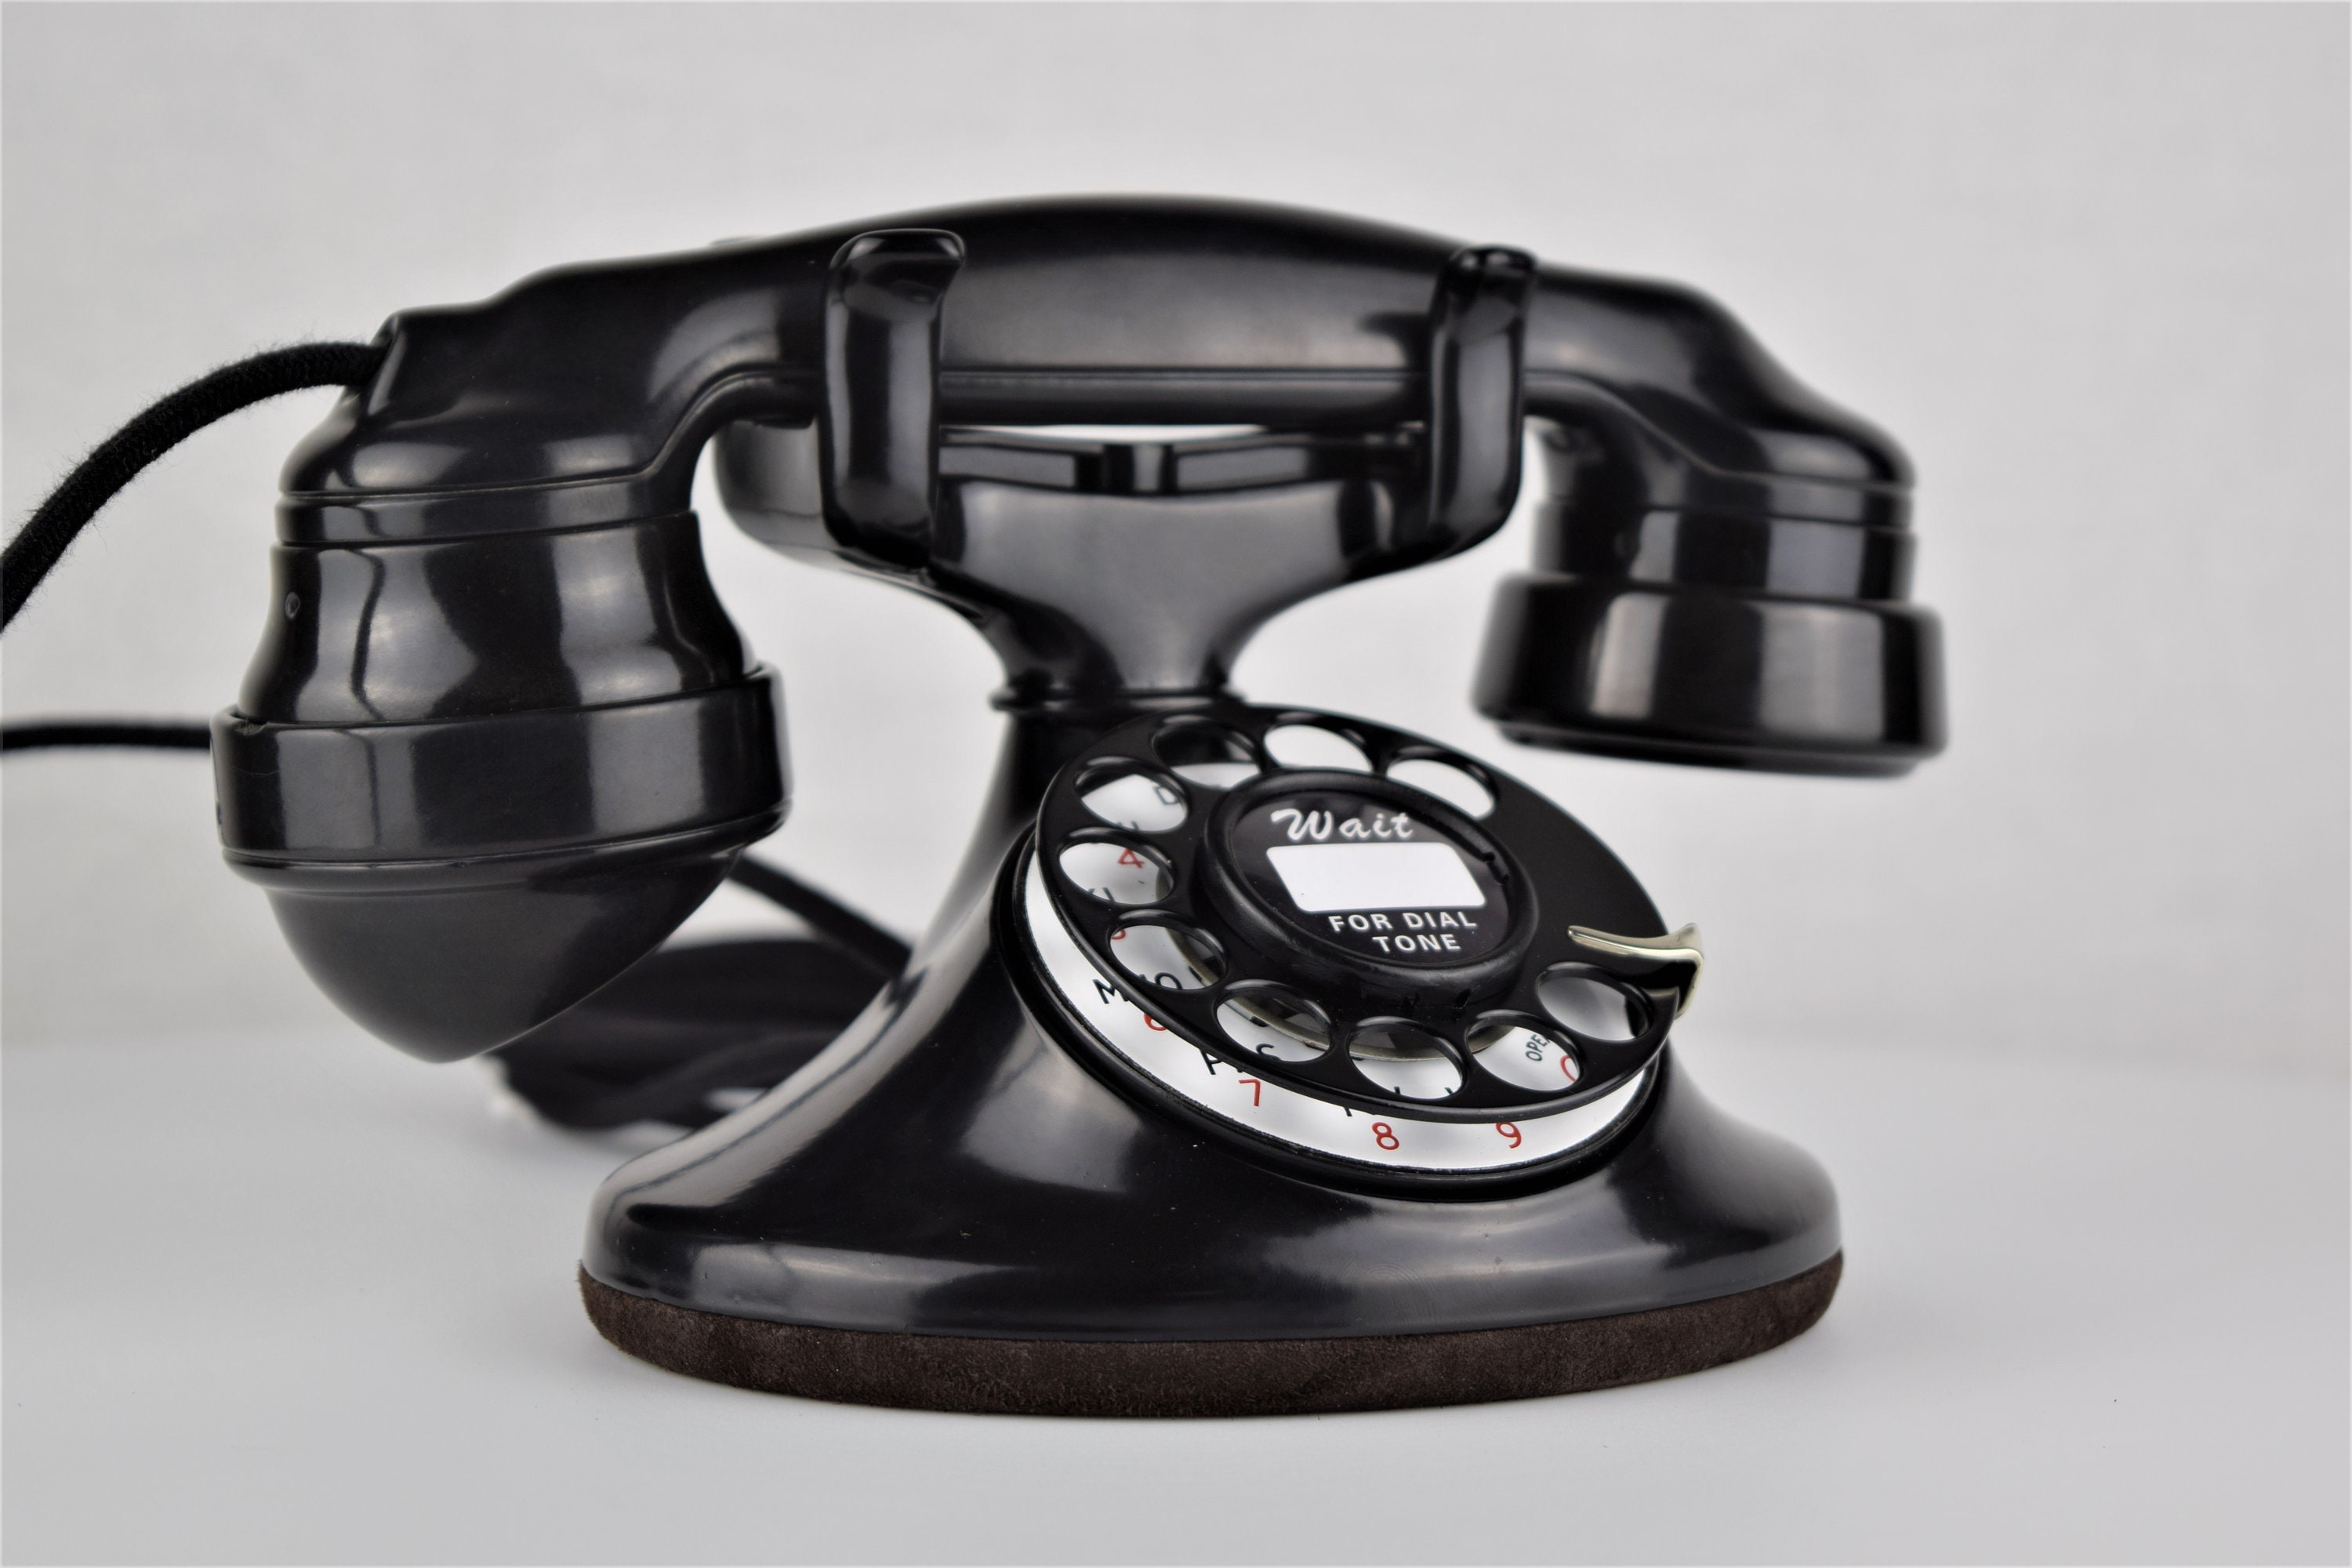 Original Antique Rotary Western Electric Model 202 Telephone E1